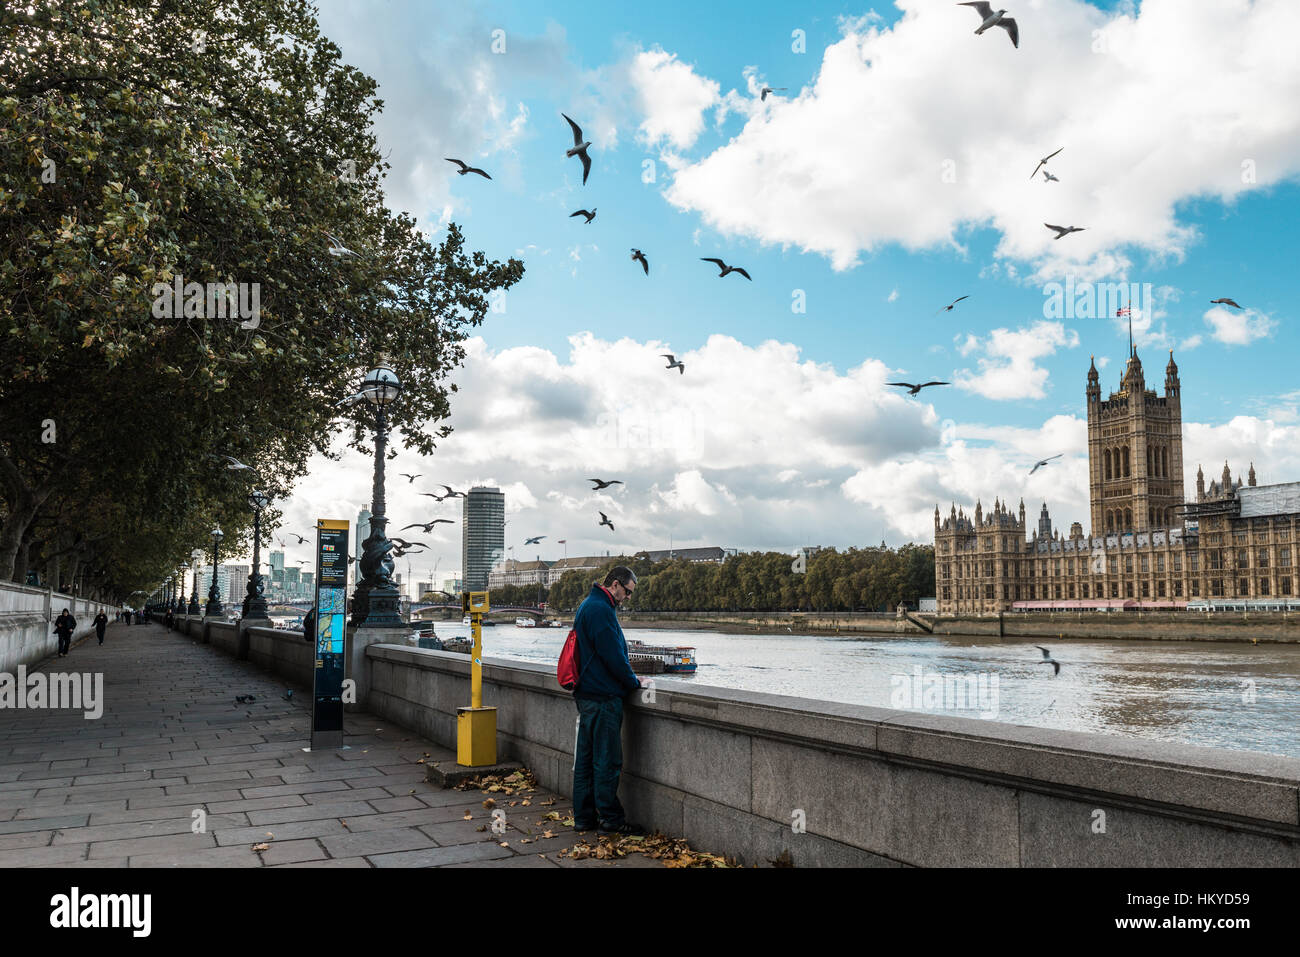 Londres, Royaume-Uni - 18 octobre 2016 : l'homme est debout près de la Tamise et profiter de la vue de Londres le Parlement et Big Ben à Londres, Angleterre Banque D'Images